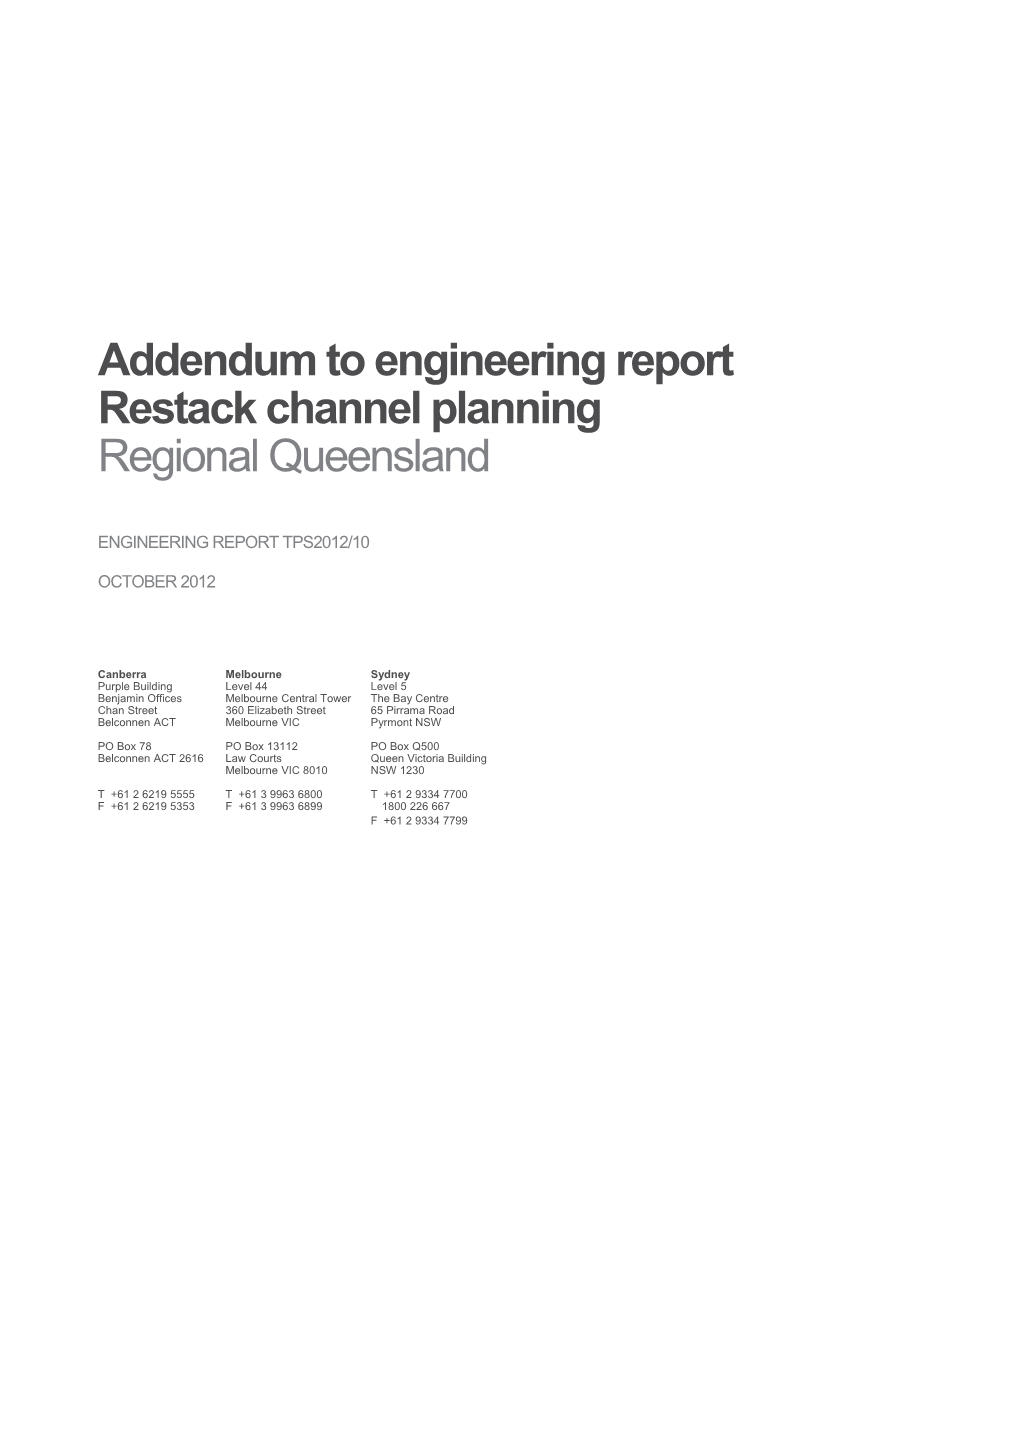 Addendum to Engineering Report Restack Channel Planning - Rgnl Queensland